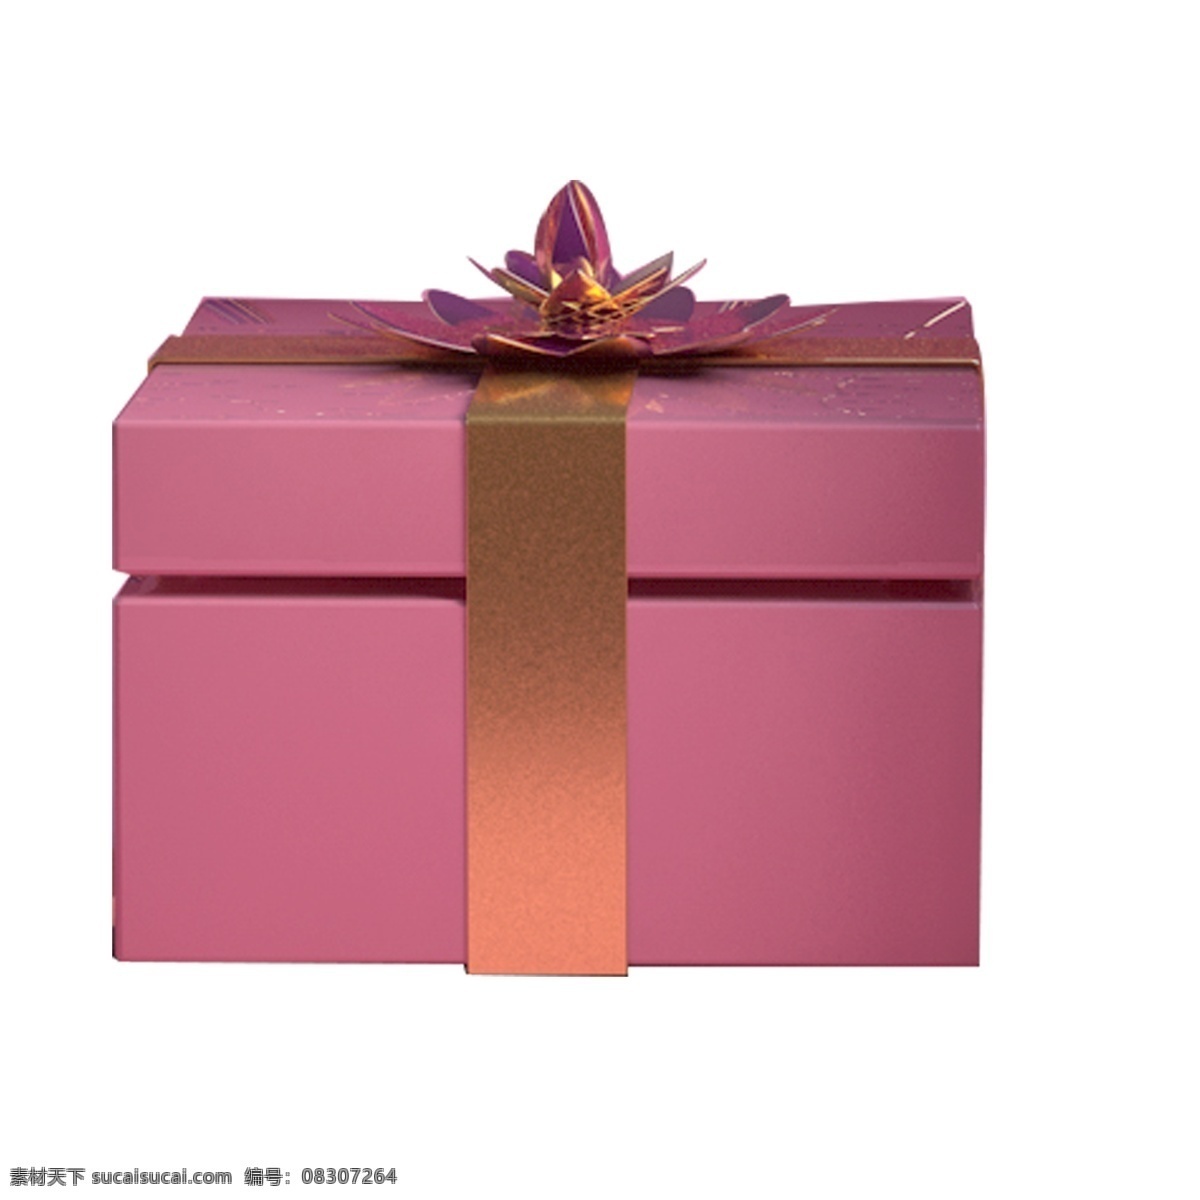 红色 礼品 盒子 免 抠 图 节日礼盒 生日礼物 红色包装盒子 蝴蝶节 礼物 免抠图